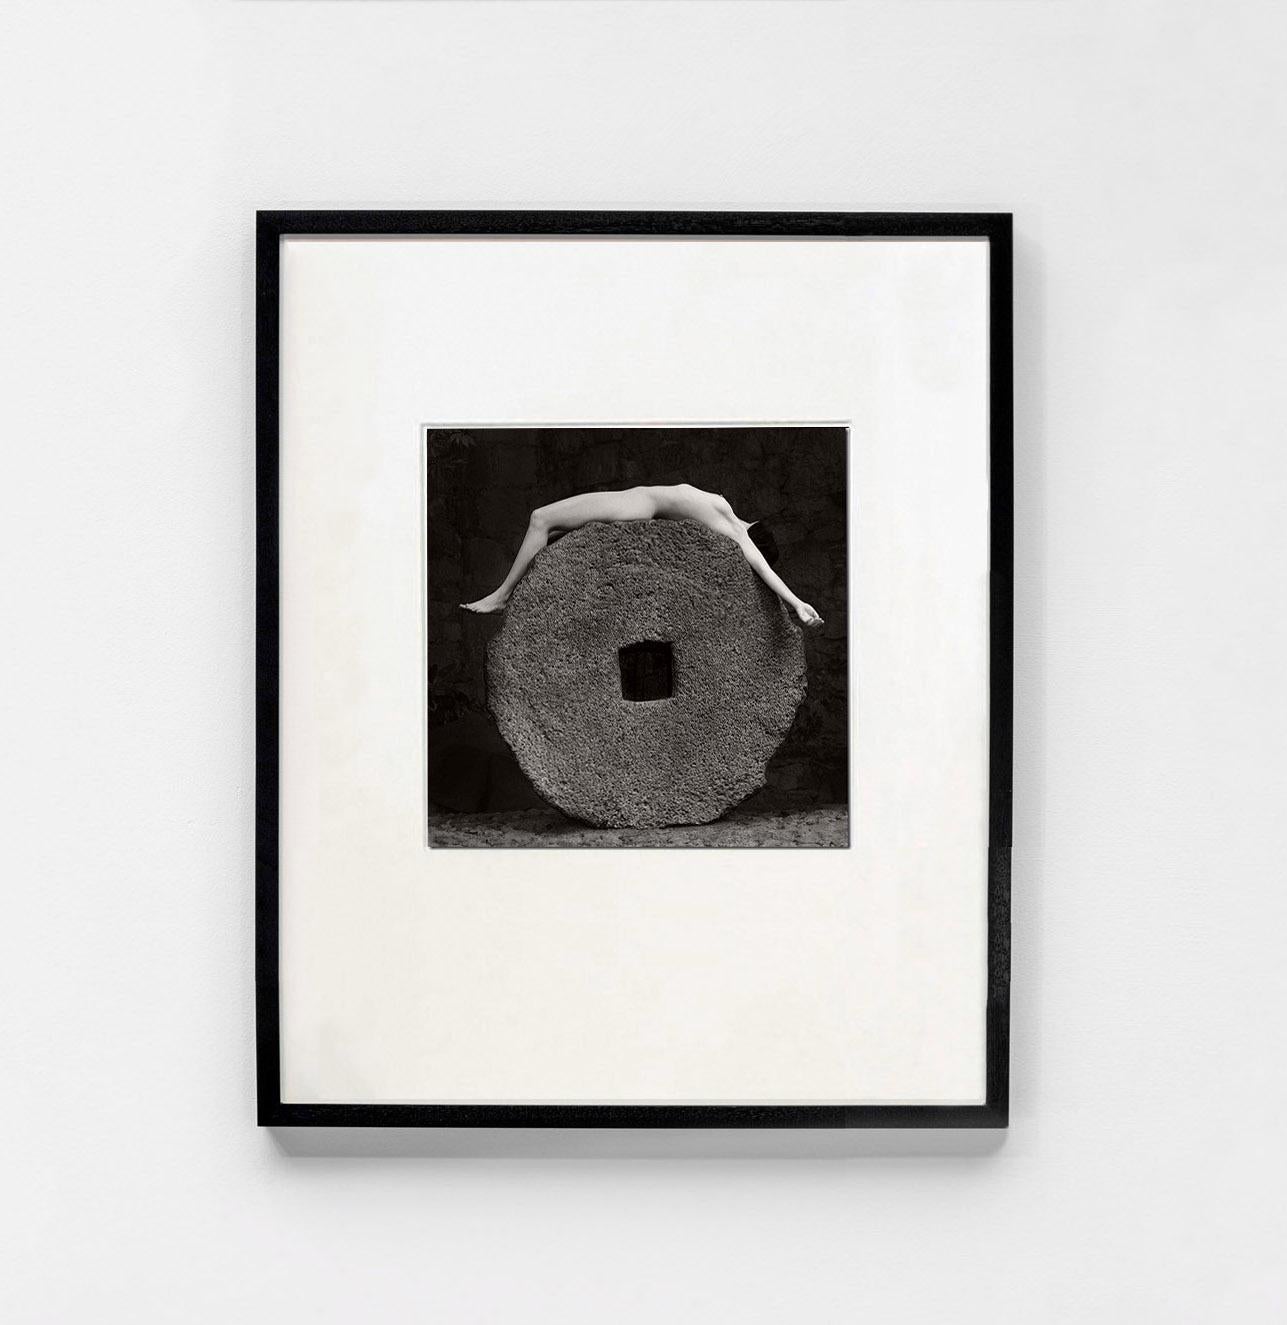 Ofrenda, México, 2000 - Flor Garduño (Black and White Photography) For Sale 1